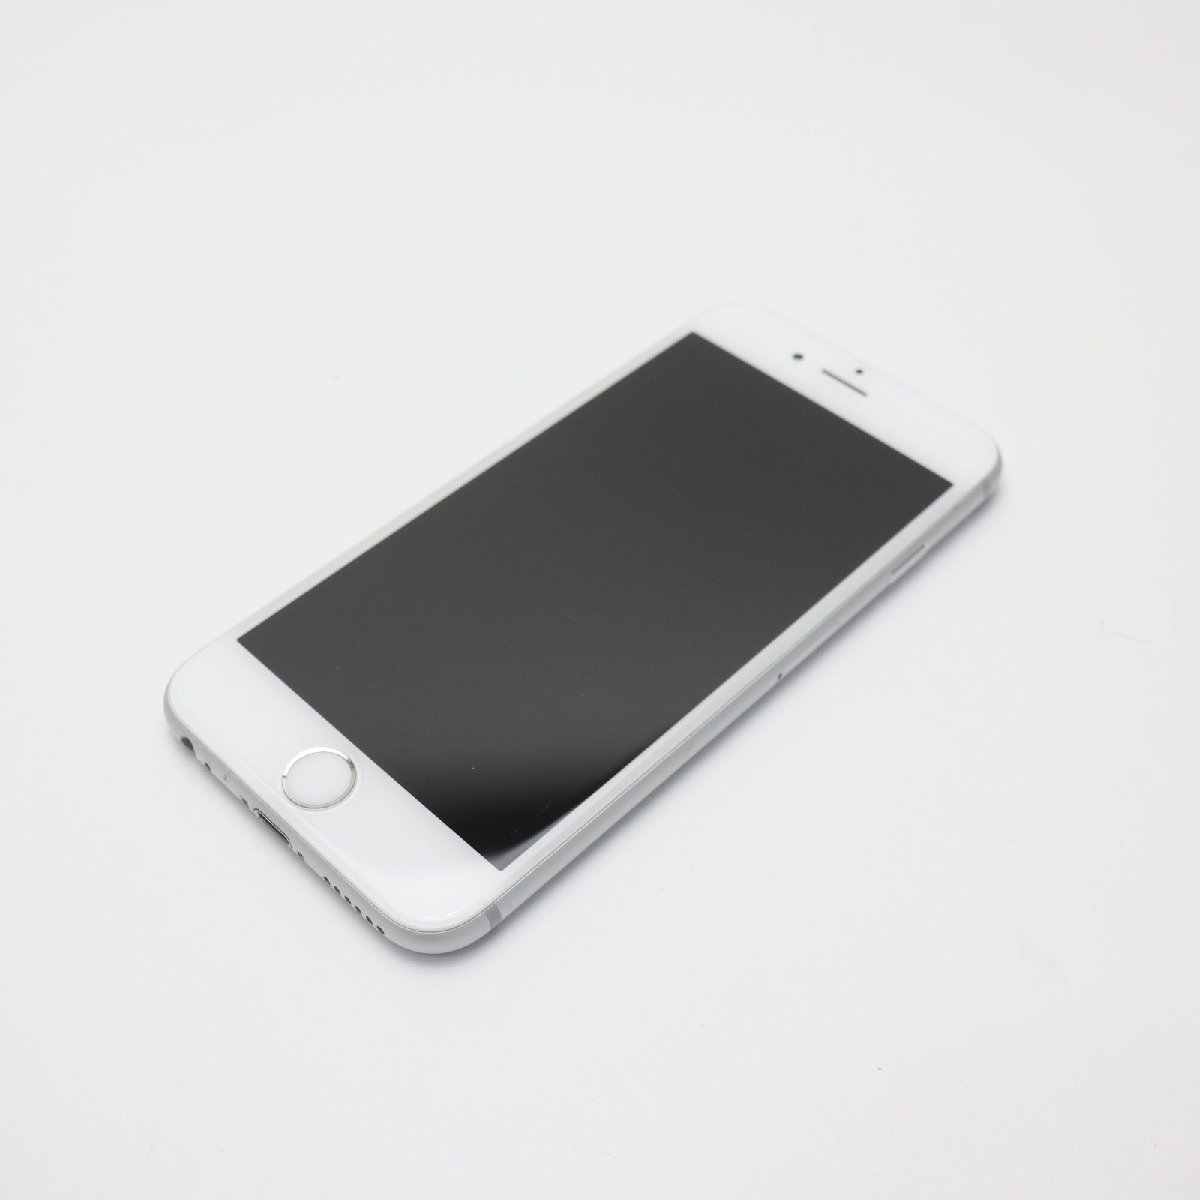 超美品 SIMフリー iPhone6S 32GB シルバー スマホ 本体 白ロム 中古 あすつく 土日祝発送OK